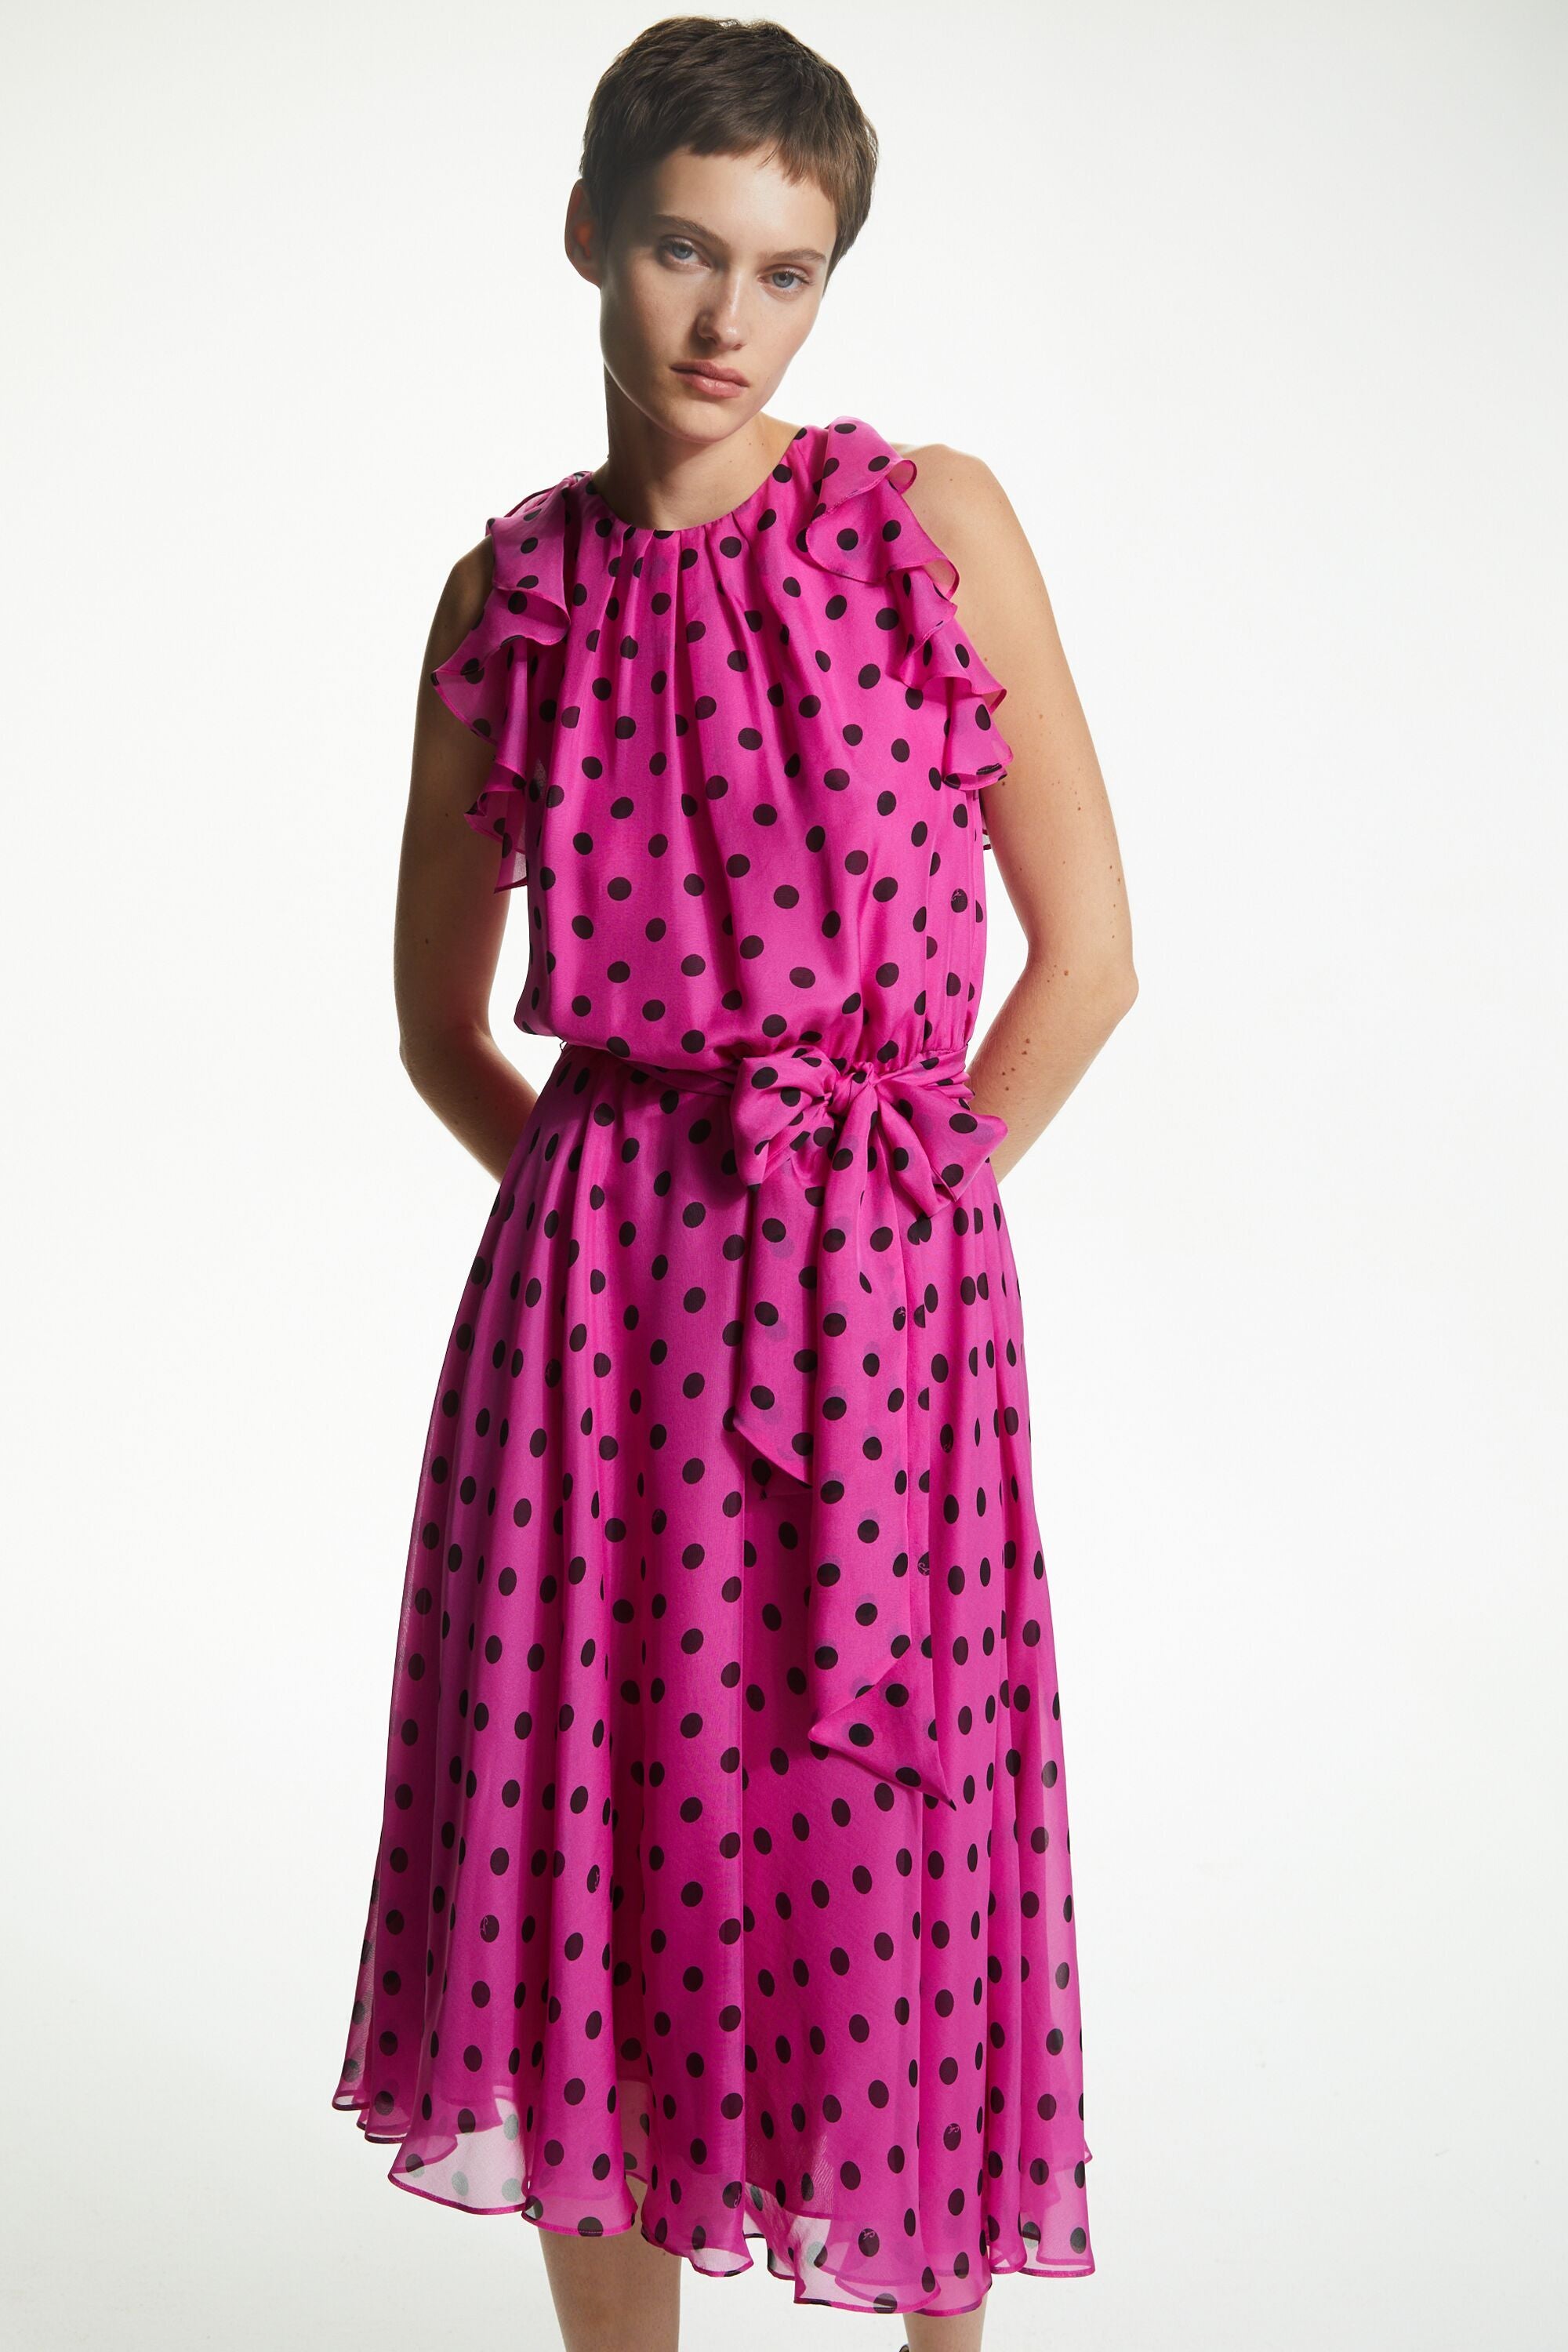 Printed silk chiffon dress with ruffles